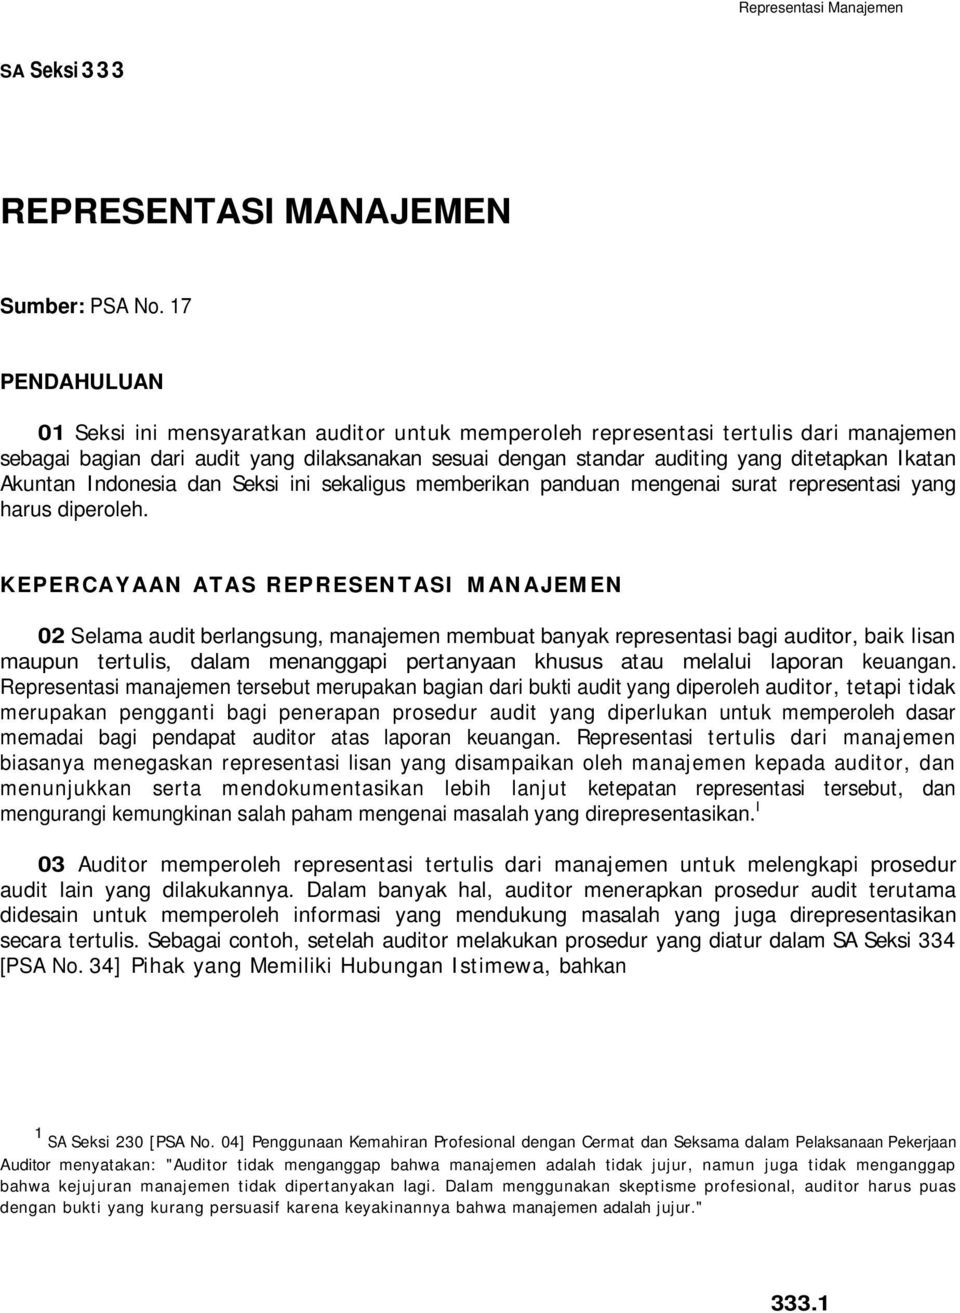 Ikatan Akuntan Indonesia dan Seksi ini sekaligus memberikan panduan mengenai surat representasi yang harus diperoleh.